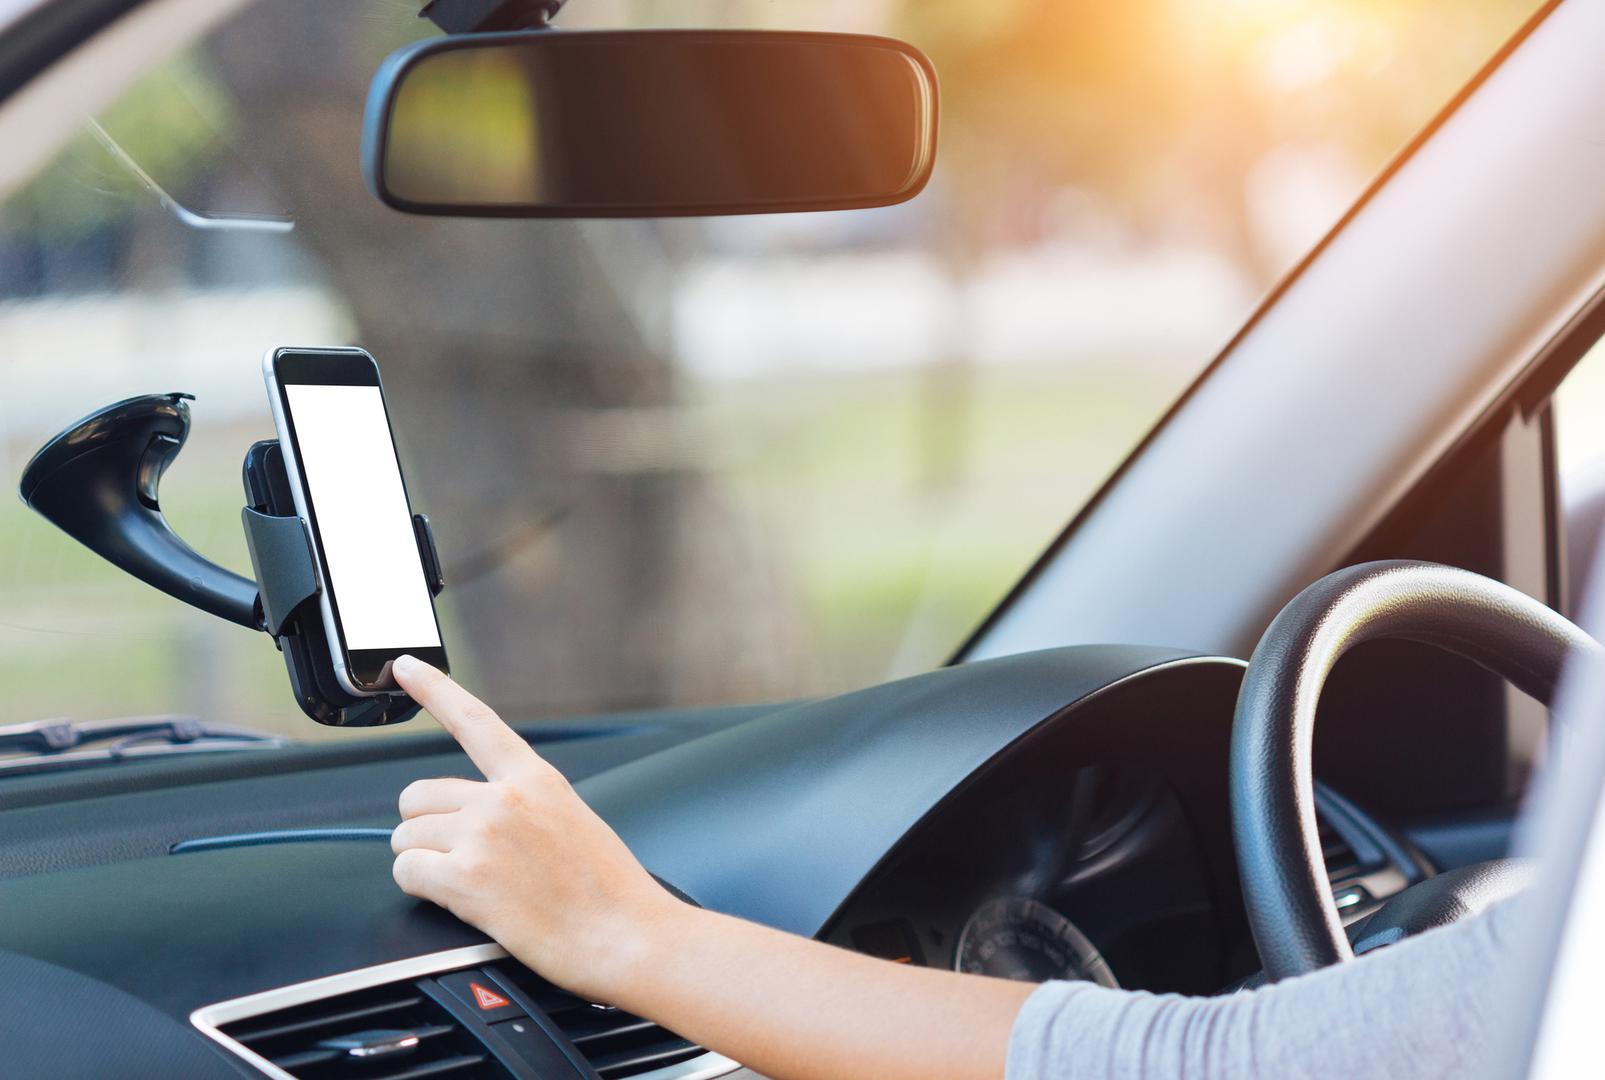 Uređaji – Vaše omiljene uređaje poput mobitela, tableta ili laptopa nikako ne ostavljajte u automobilu ako će temperatura pasti ispod 0 stupnjeva Celzijevih. 